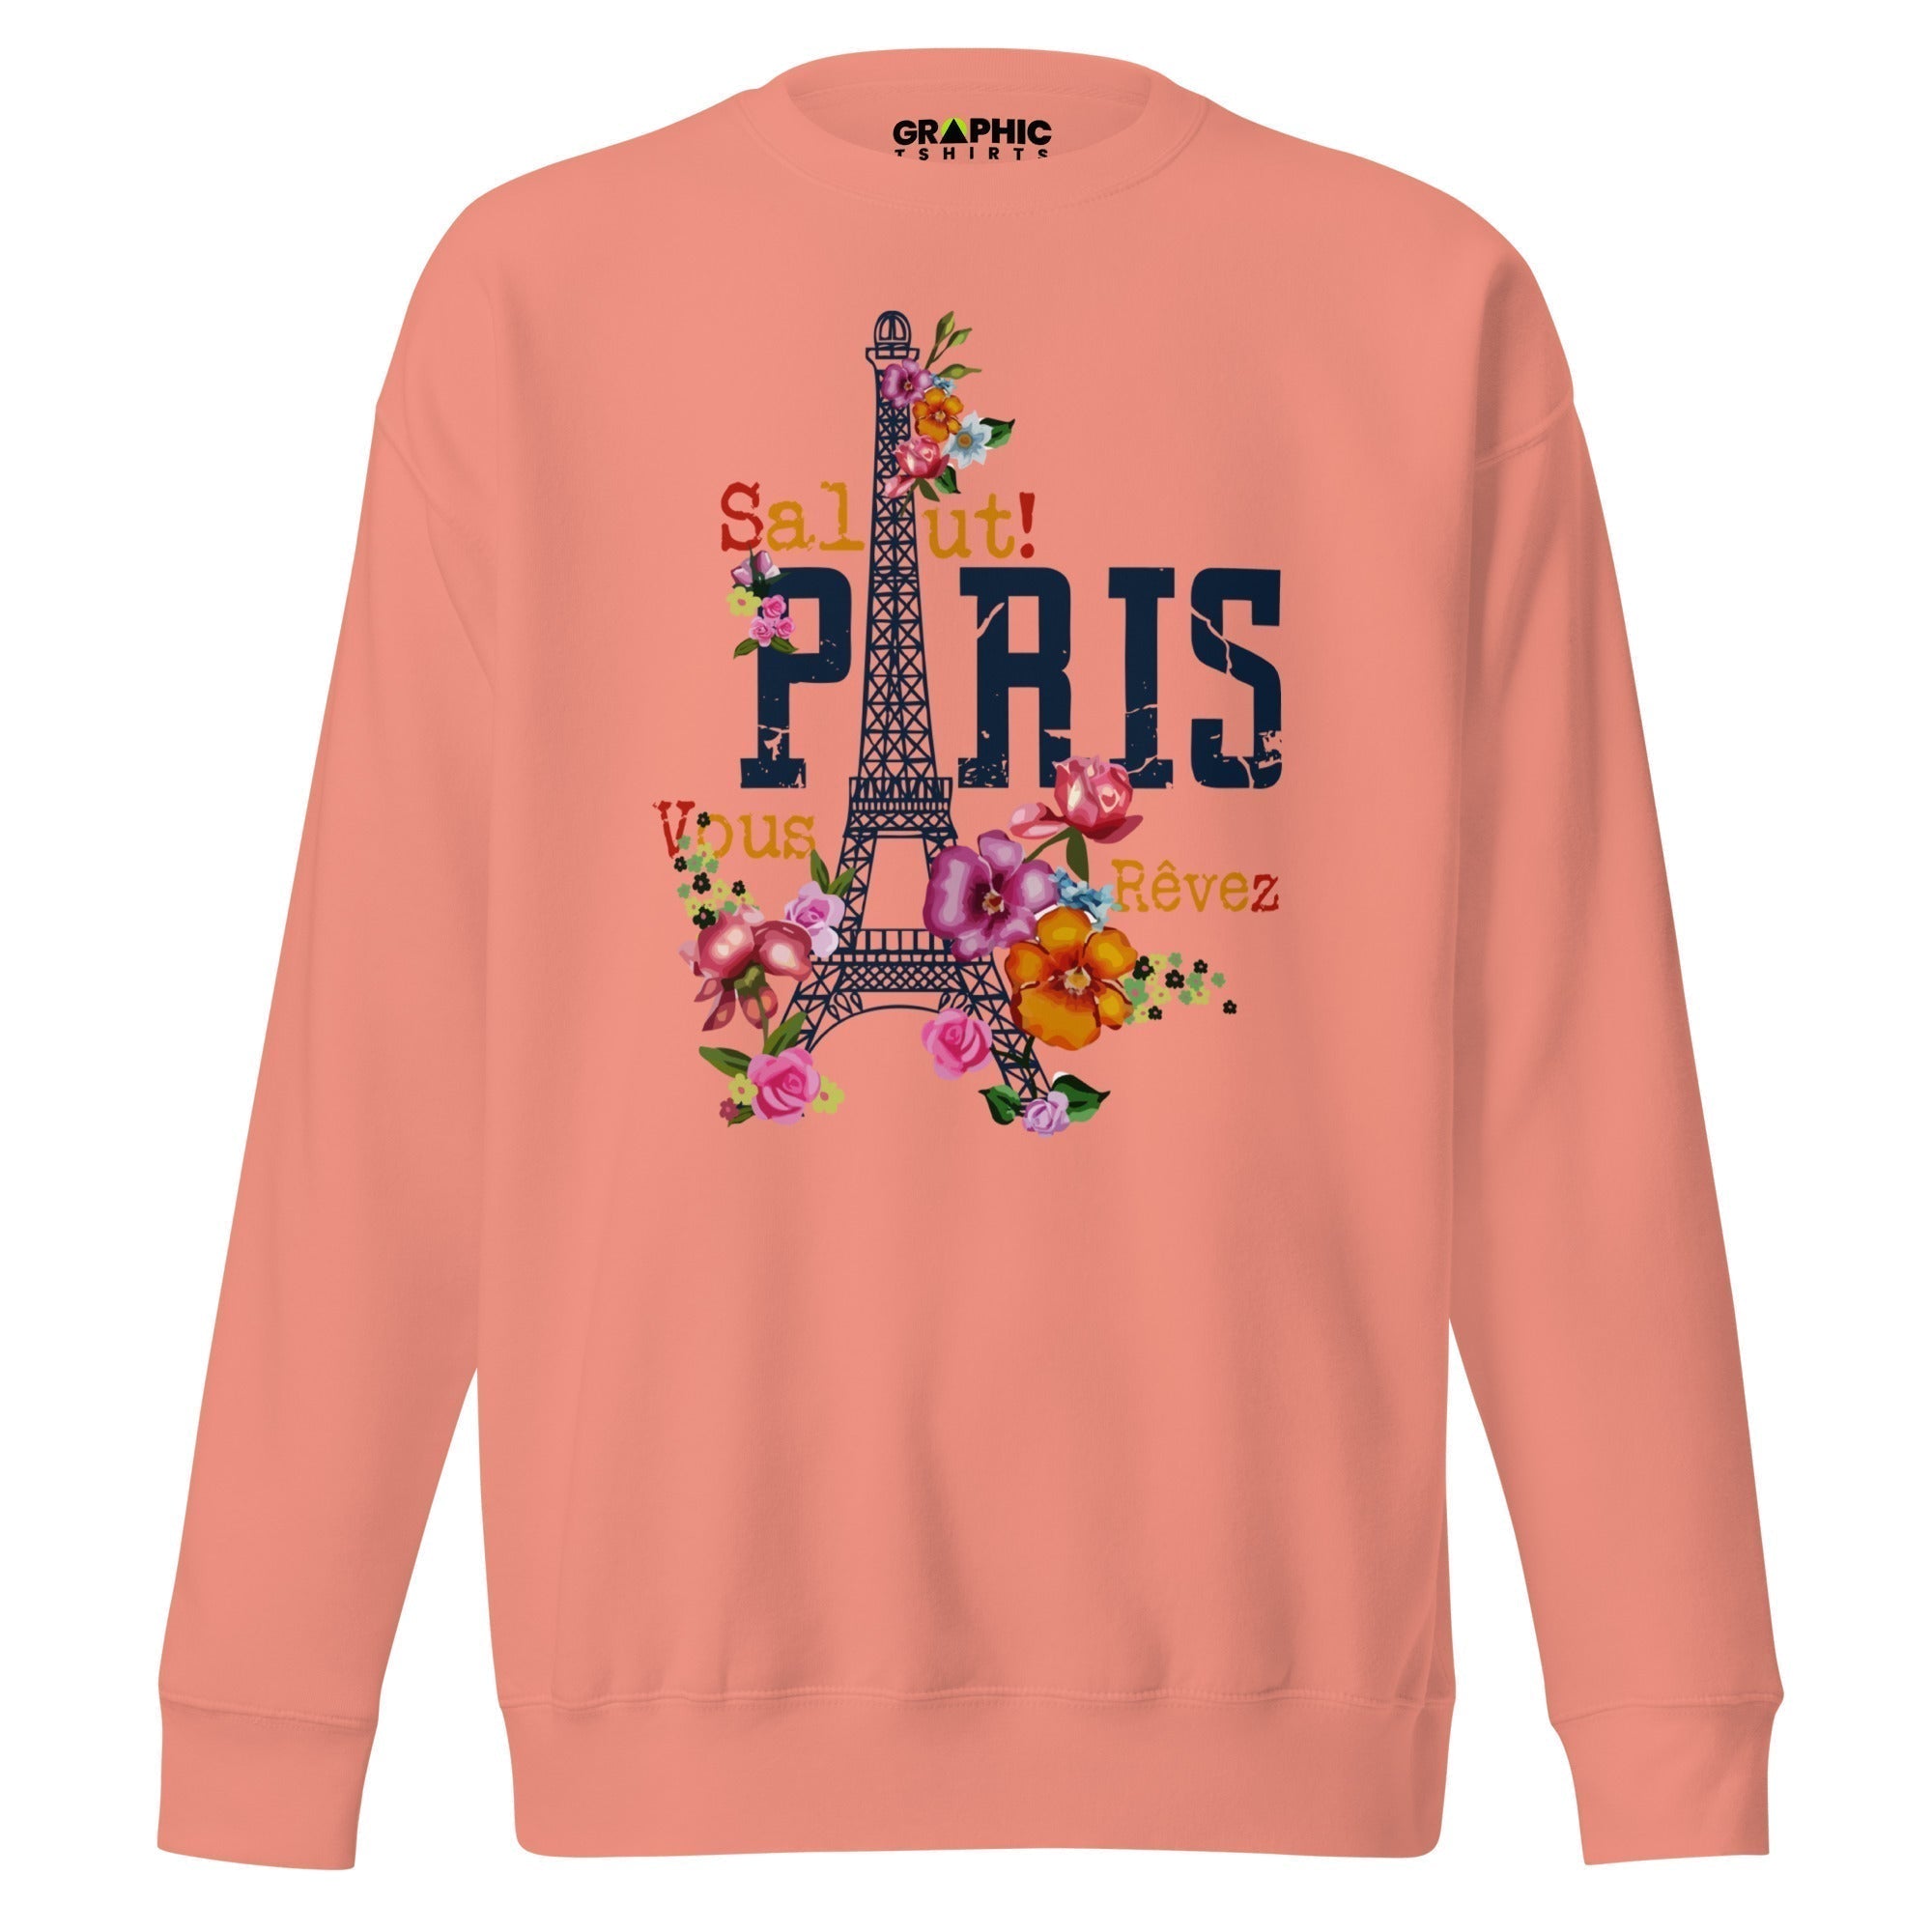 Unisex Premium Sweatshirt - Salut Paris Je Vous Revez - GRAPHIC T-SHIRTS